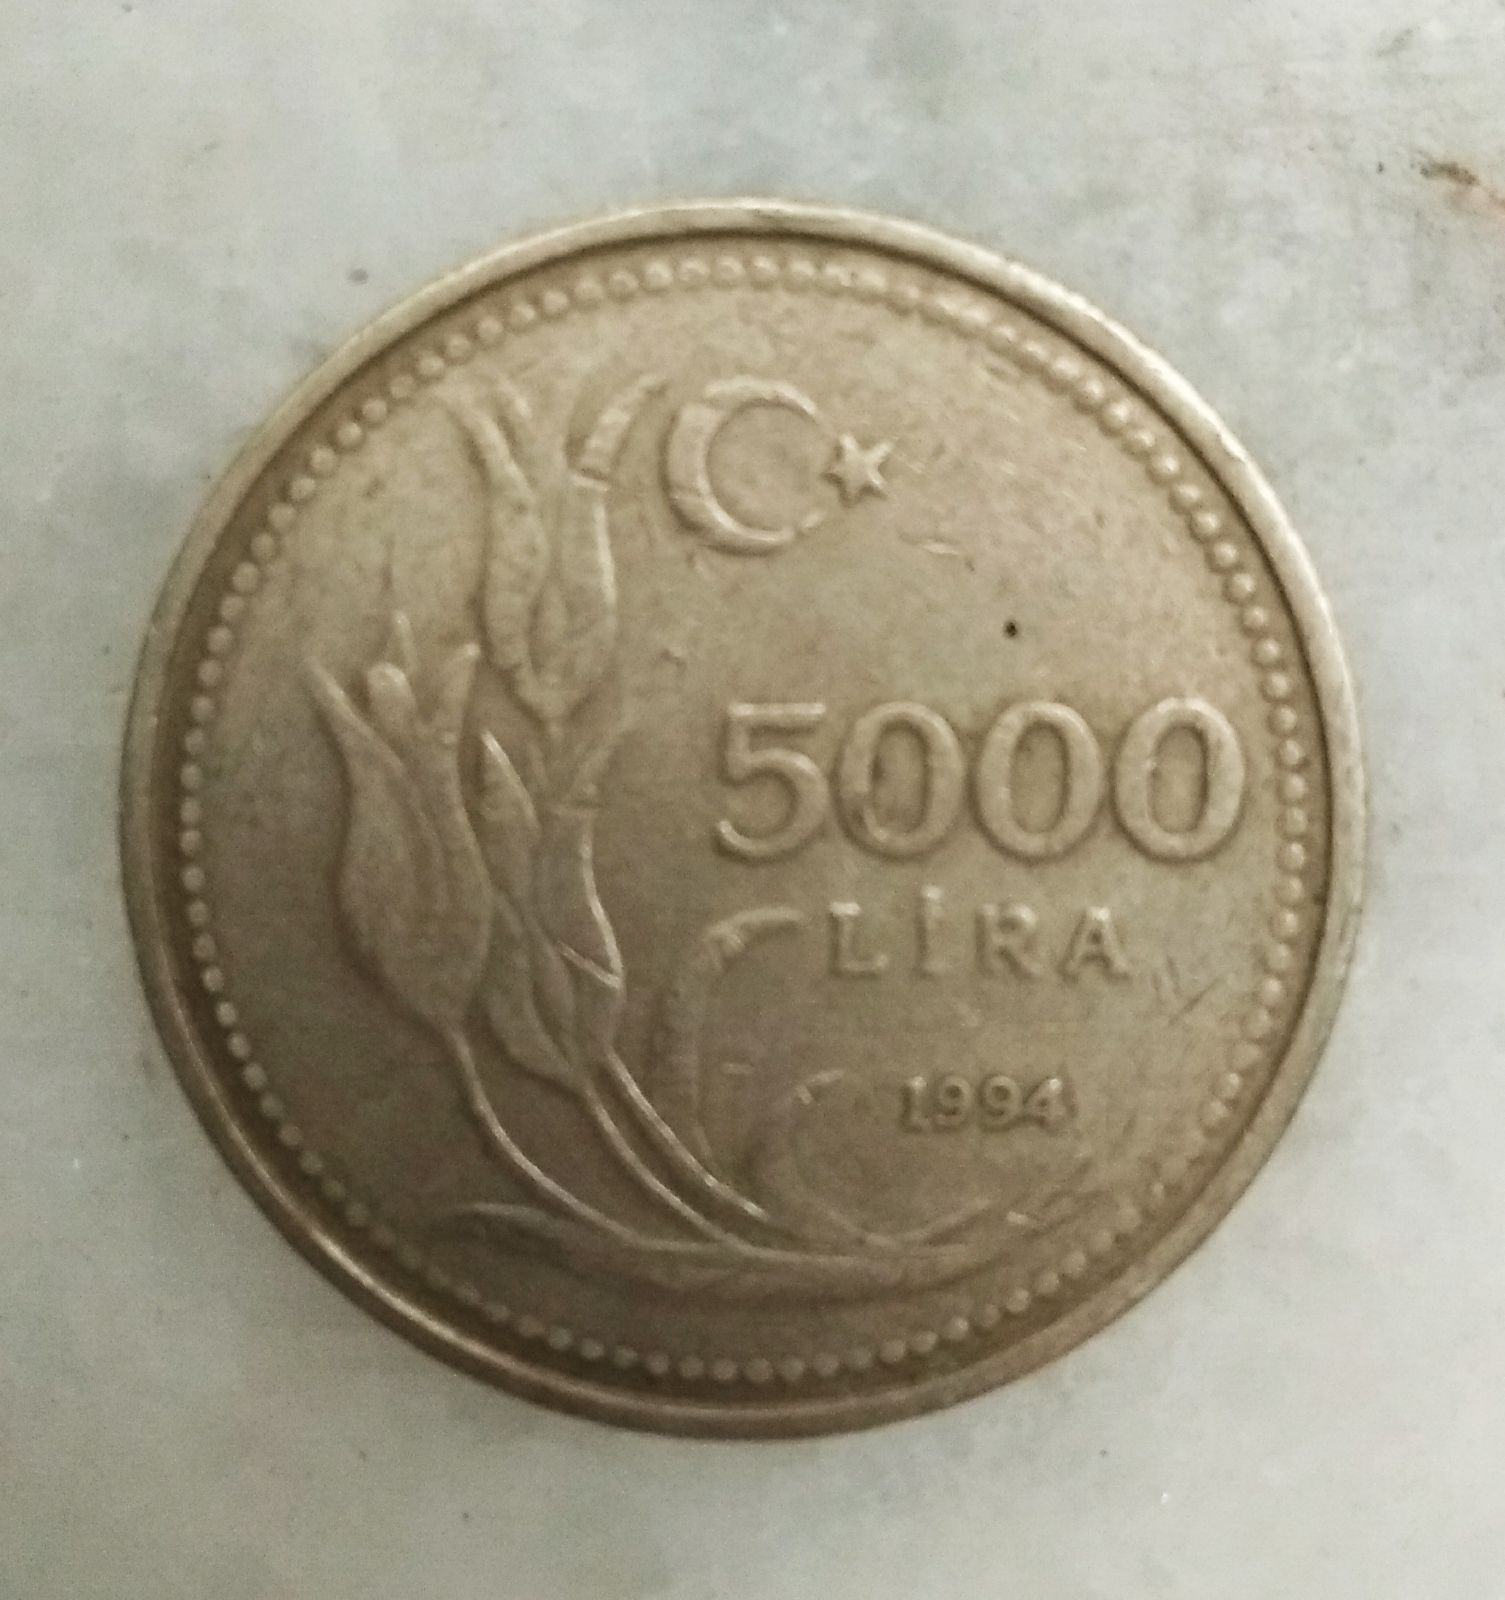 5000 Lira 1994 Ön Yüz